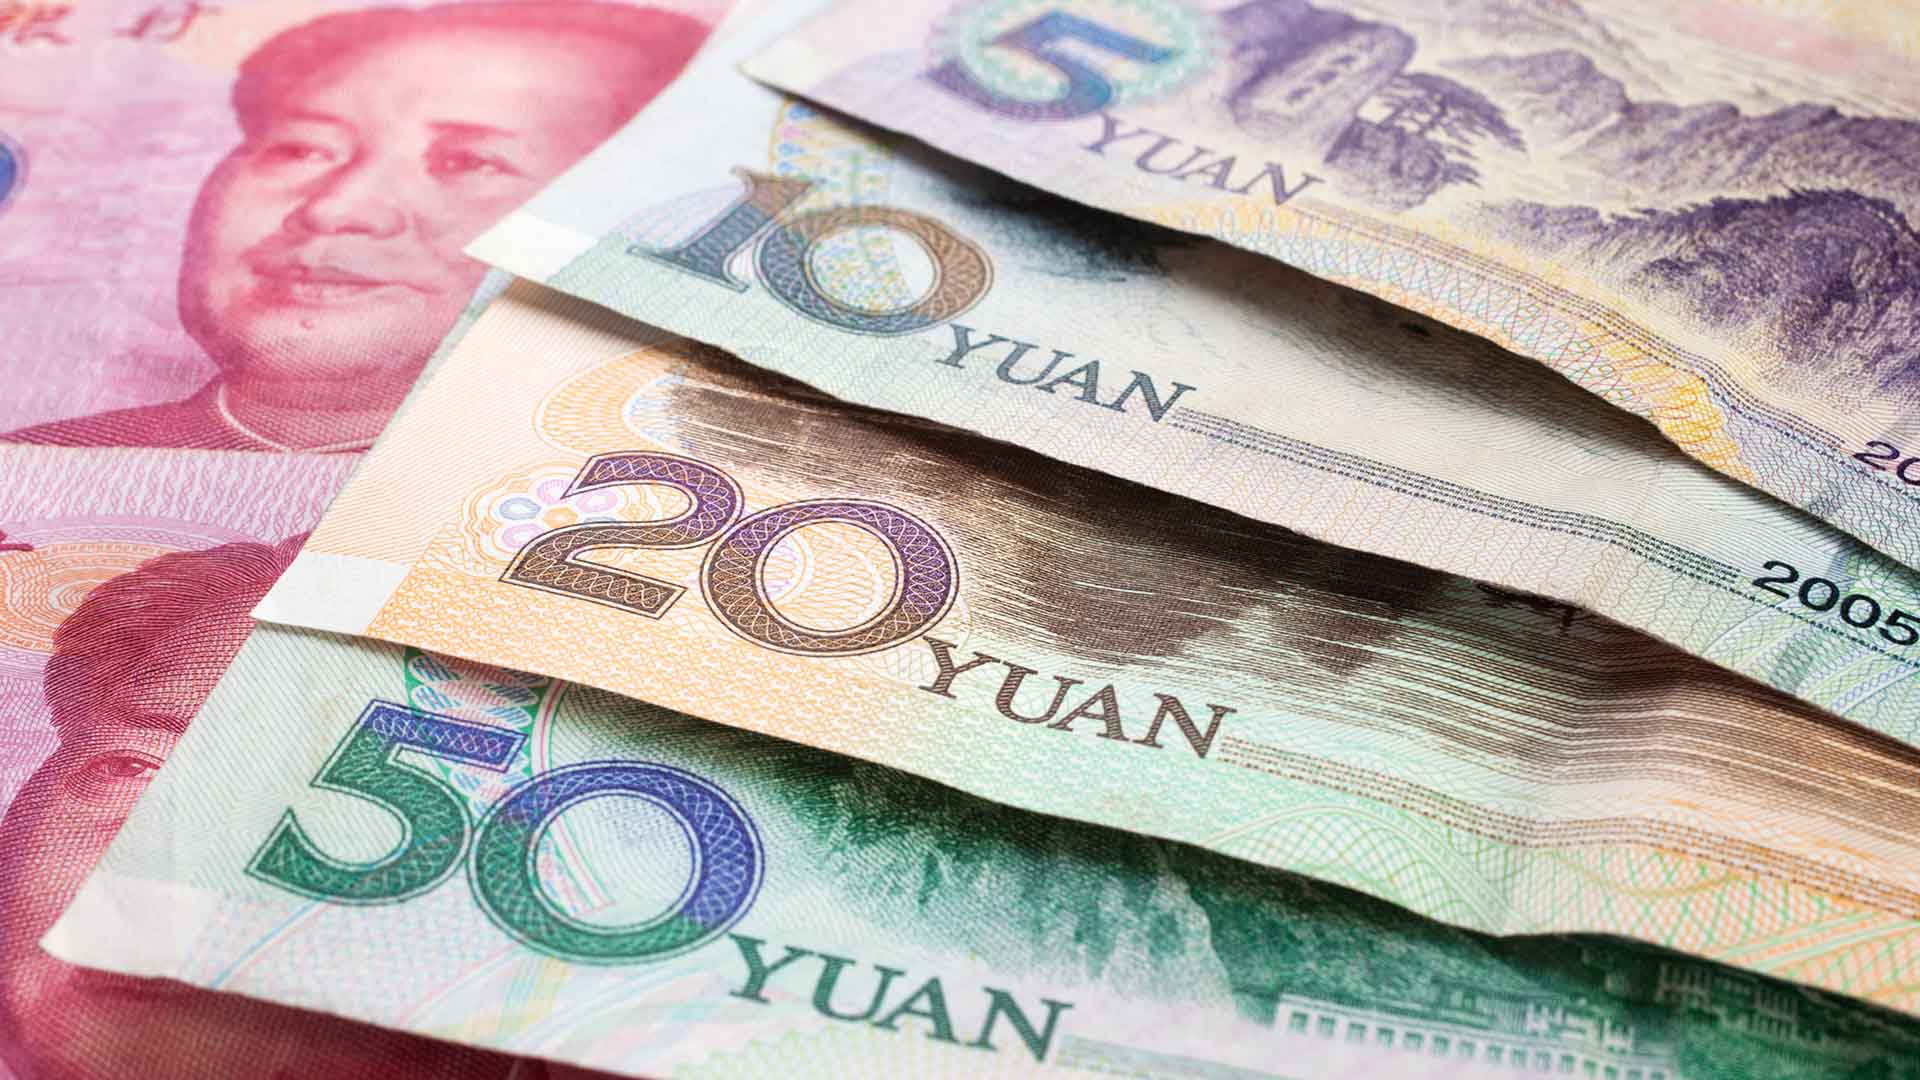 Китайские деньги. Китай юань. Валюта Китая юань. Денежная единица Китая юань. Валюта Китая купюры.